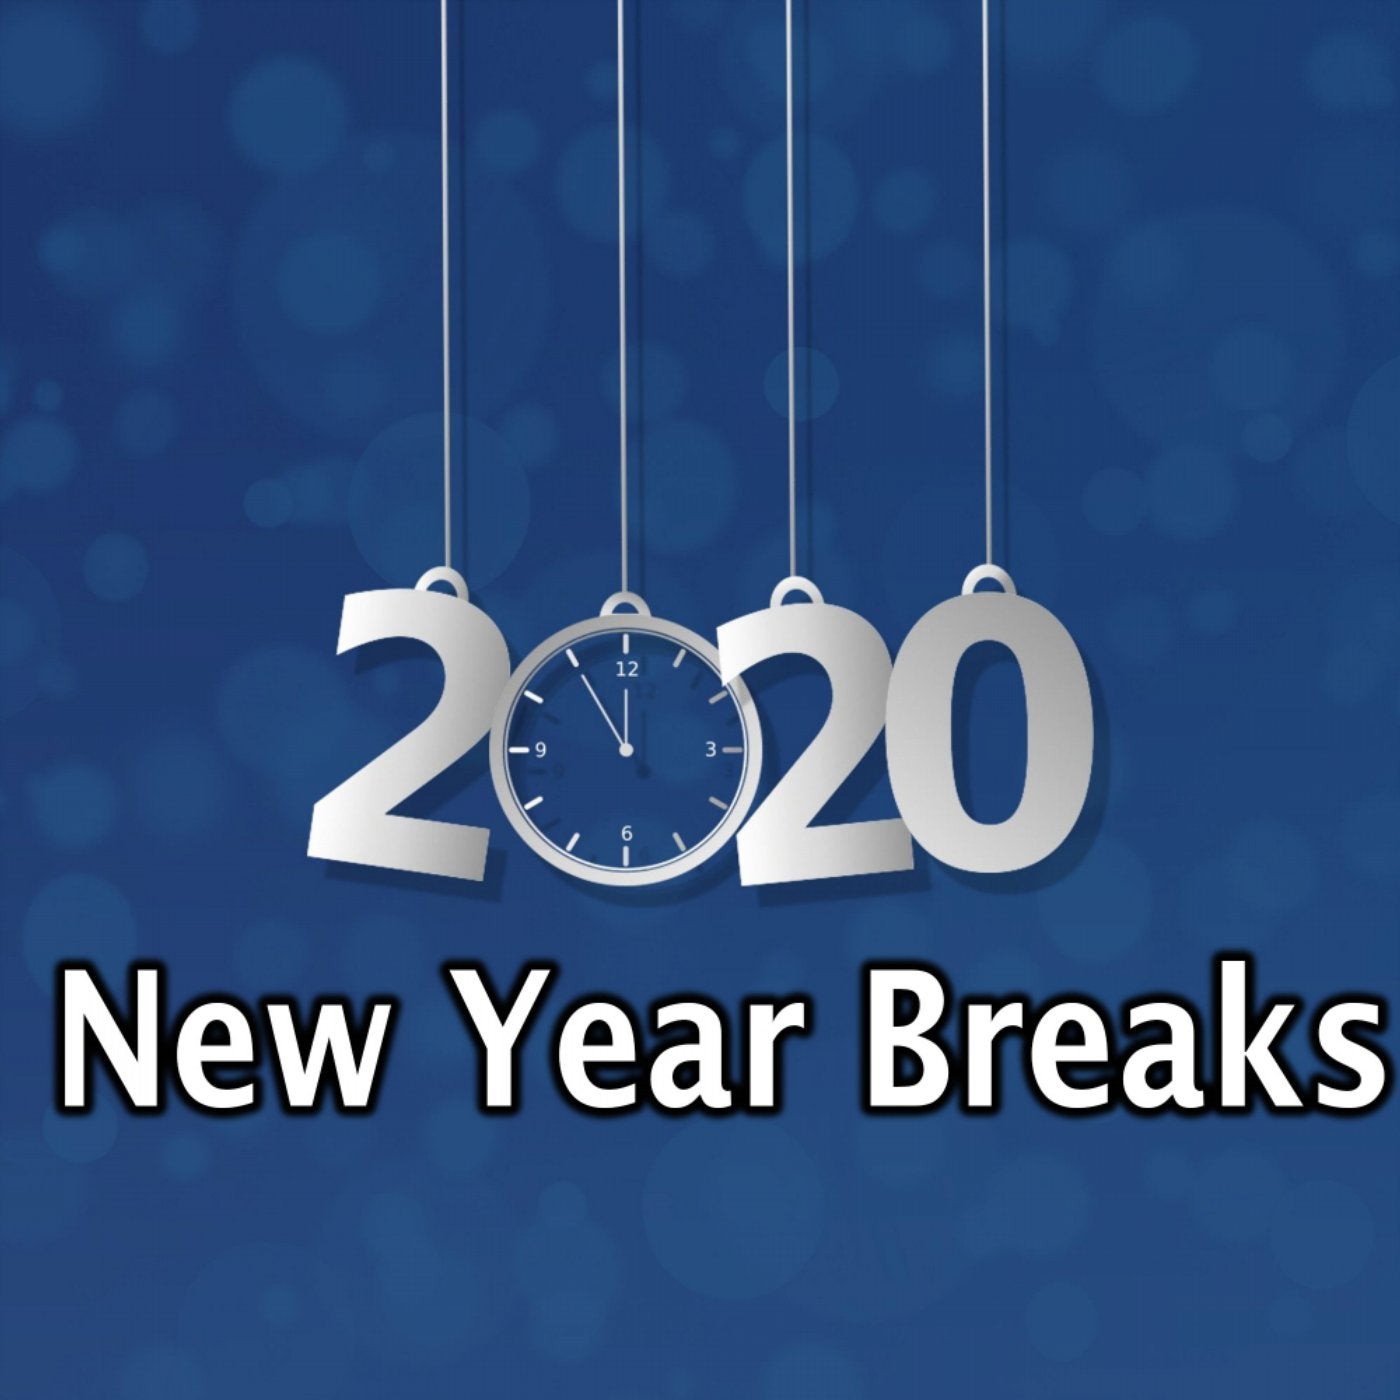 New Year Breaks 2020